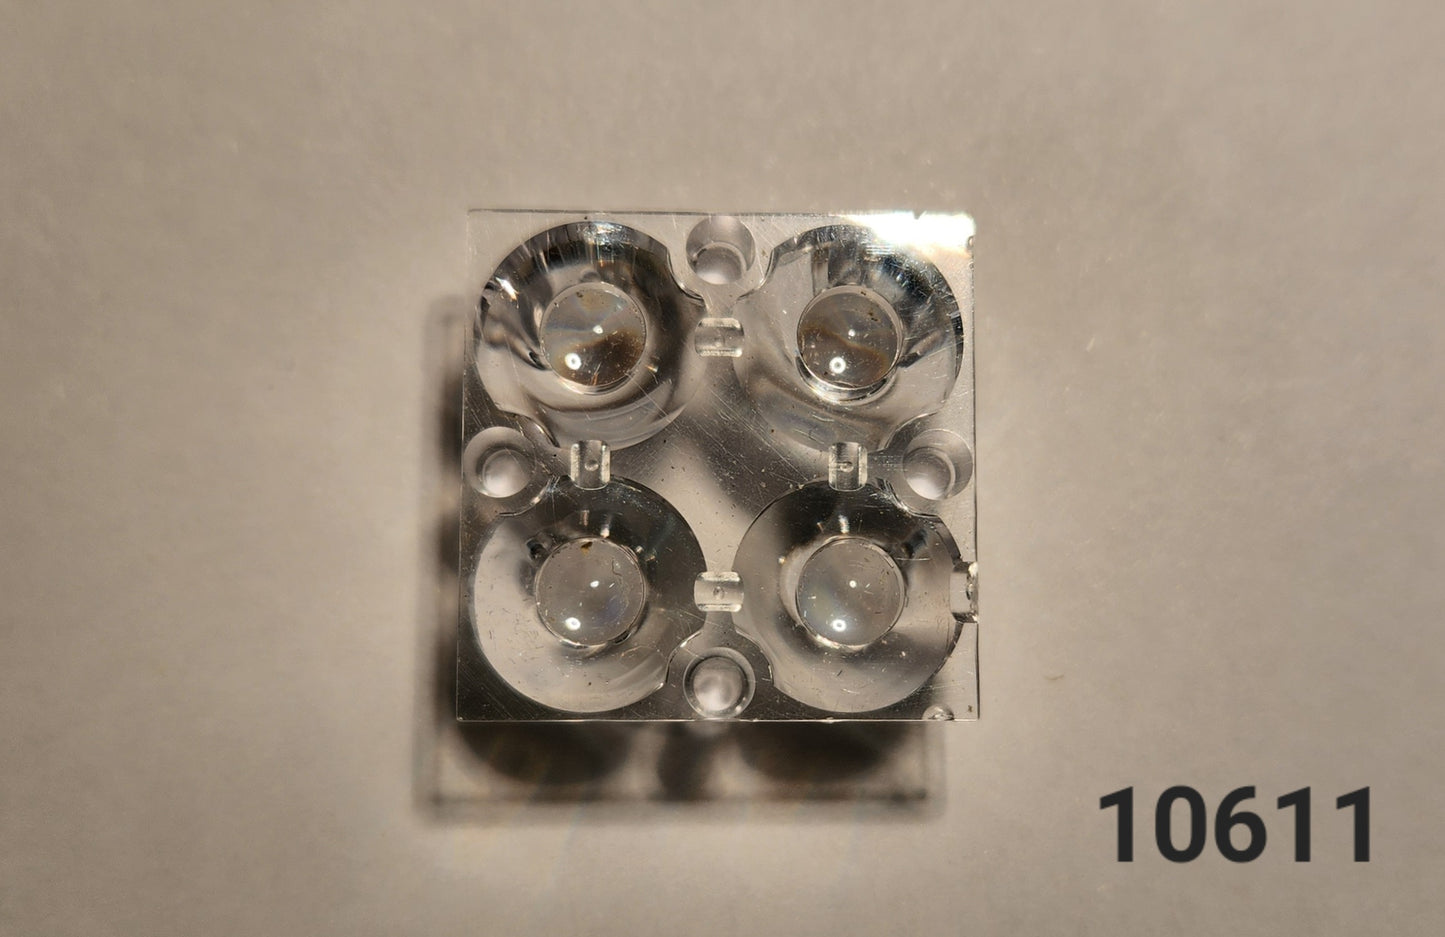 Emisar/Noctigon Replacement Glass TIR Optics CARCLO 10611 (DT8/DT8K SPOT OPTICS)